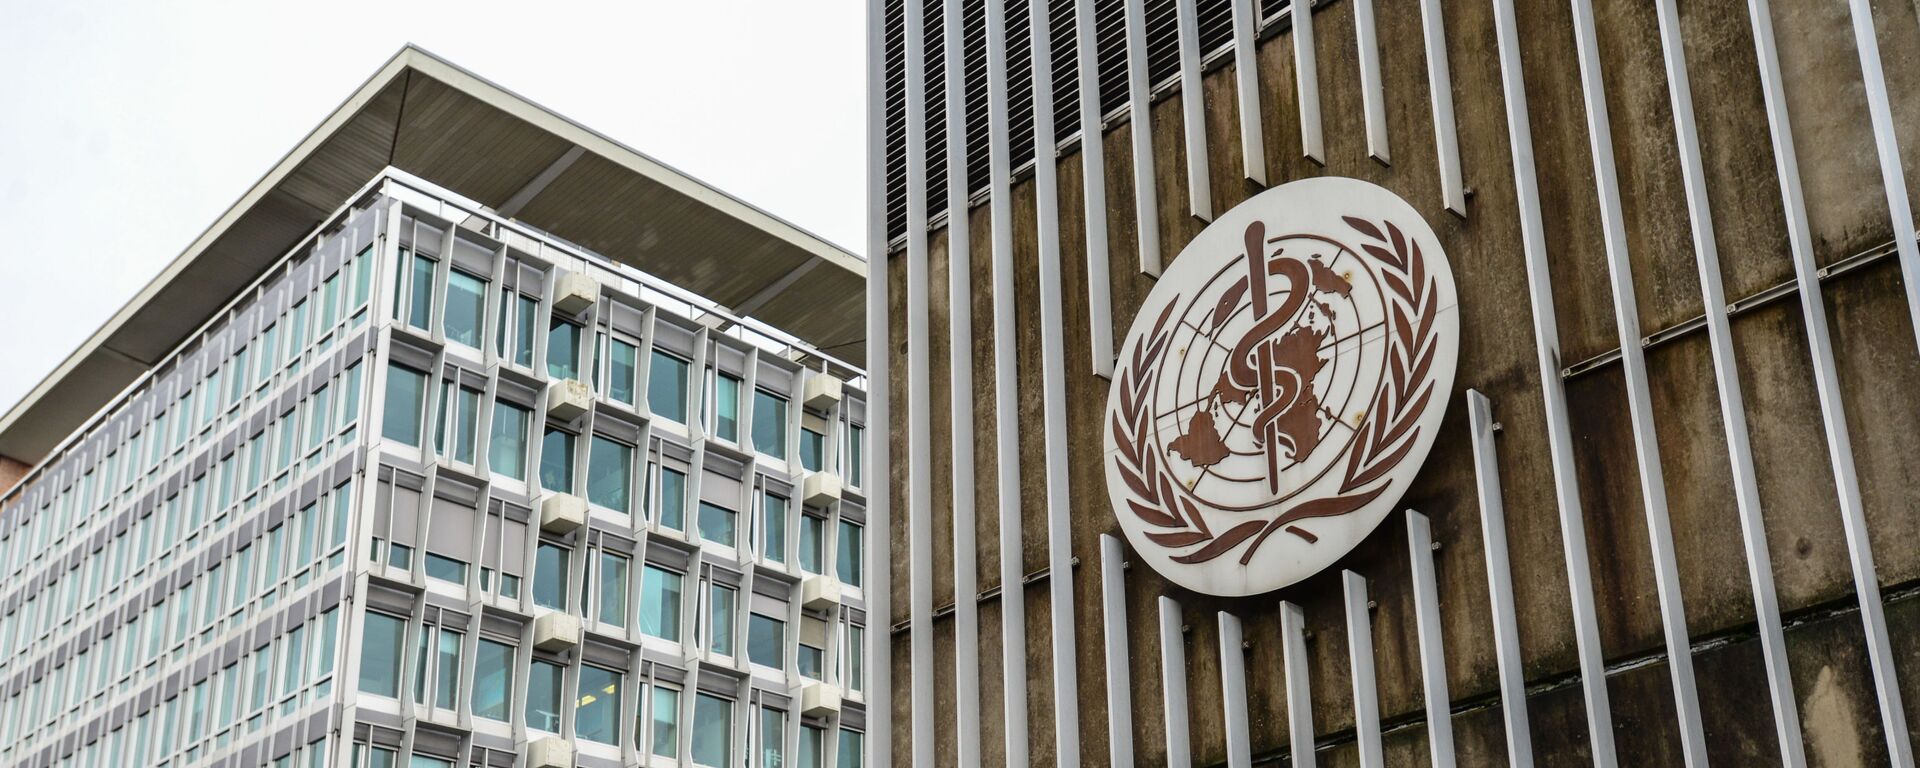 Здание штаб-квартиры Всемирной организации здравоохранения в Женеве.  - Sputnik Латвия, 1920, 30.10.2021